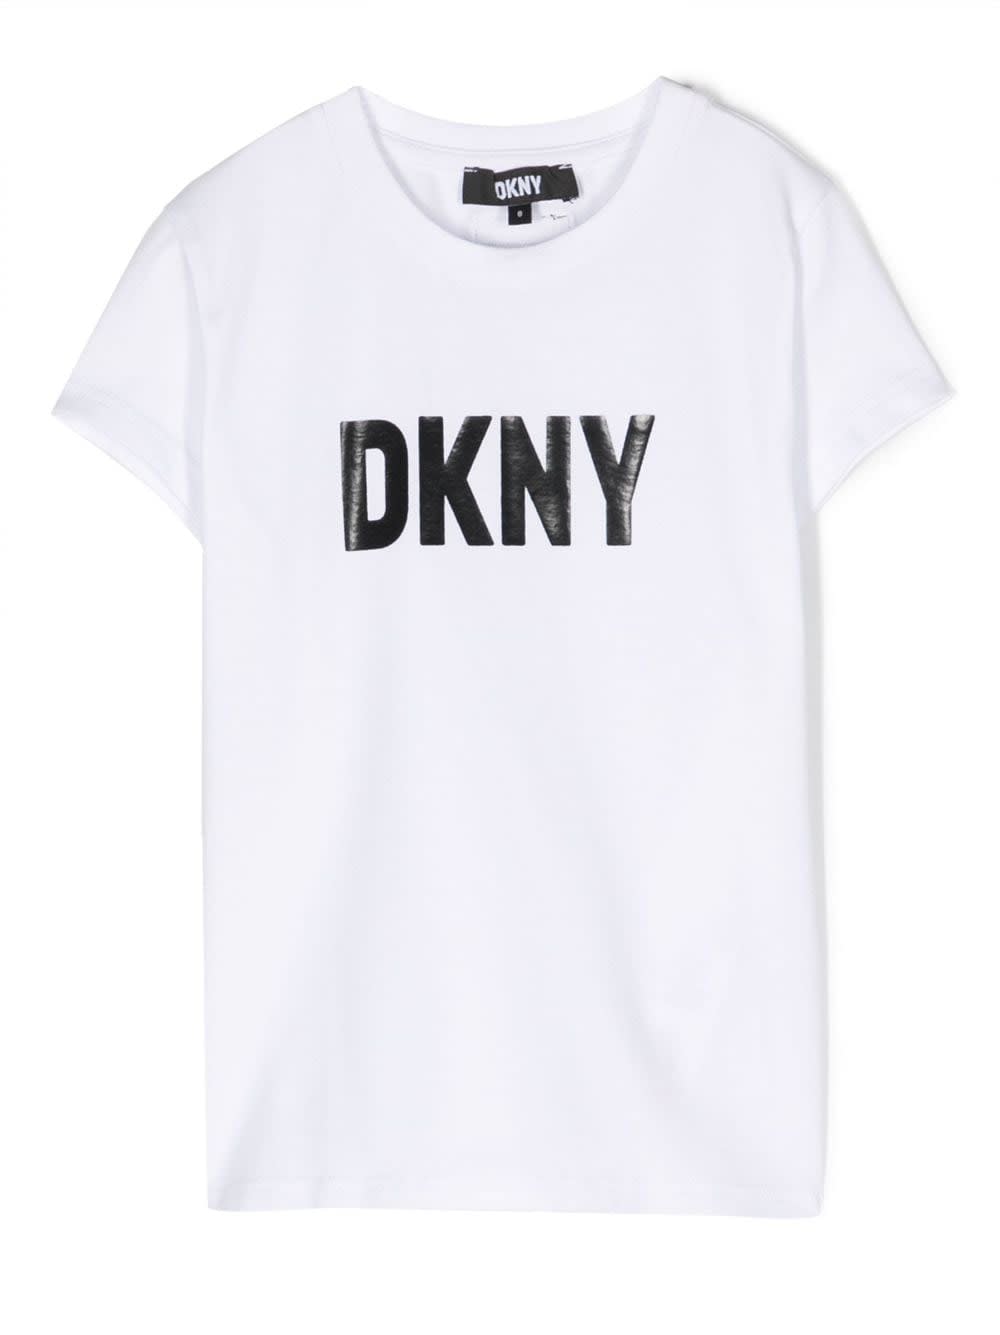 Dkny T-shirt Bianca In Jersey Di Cotone Bambino